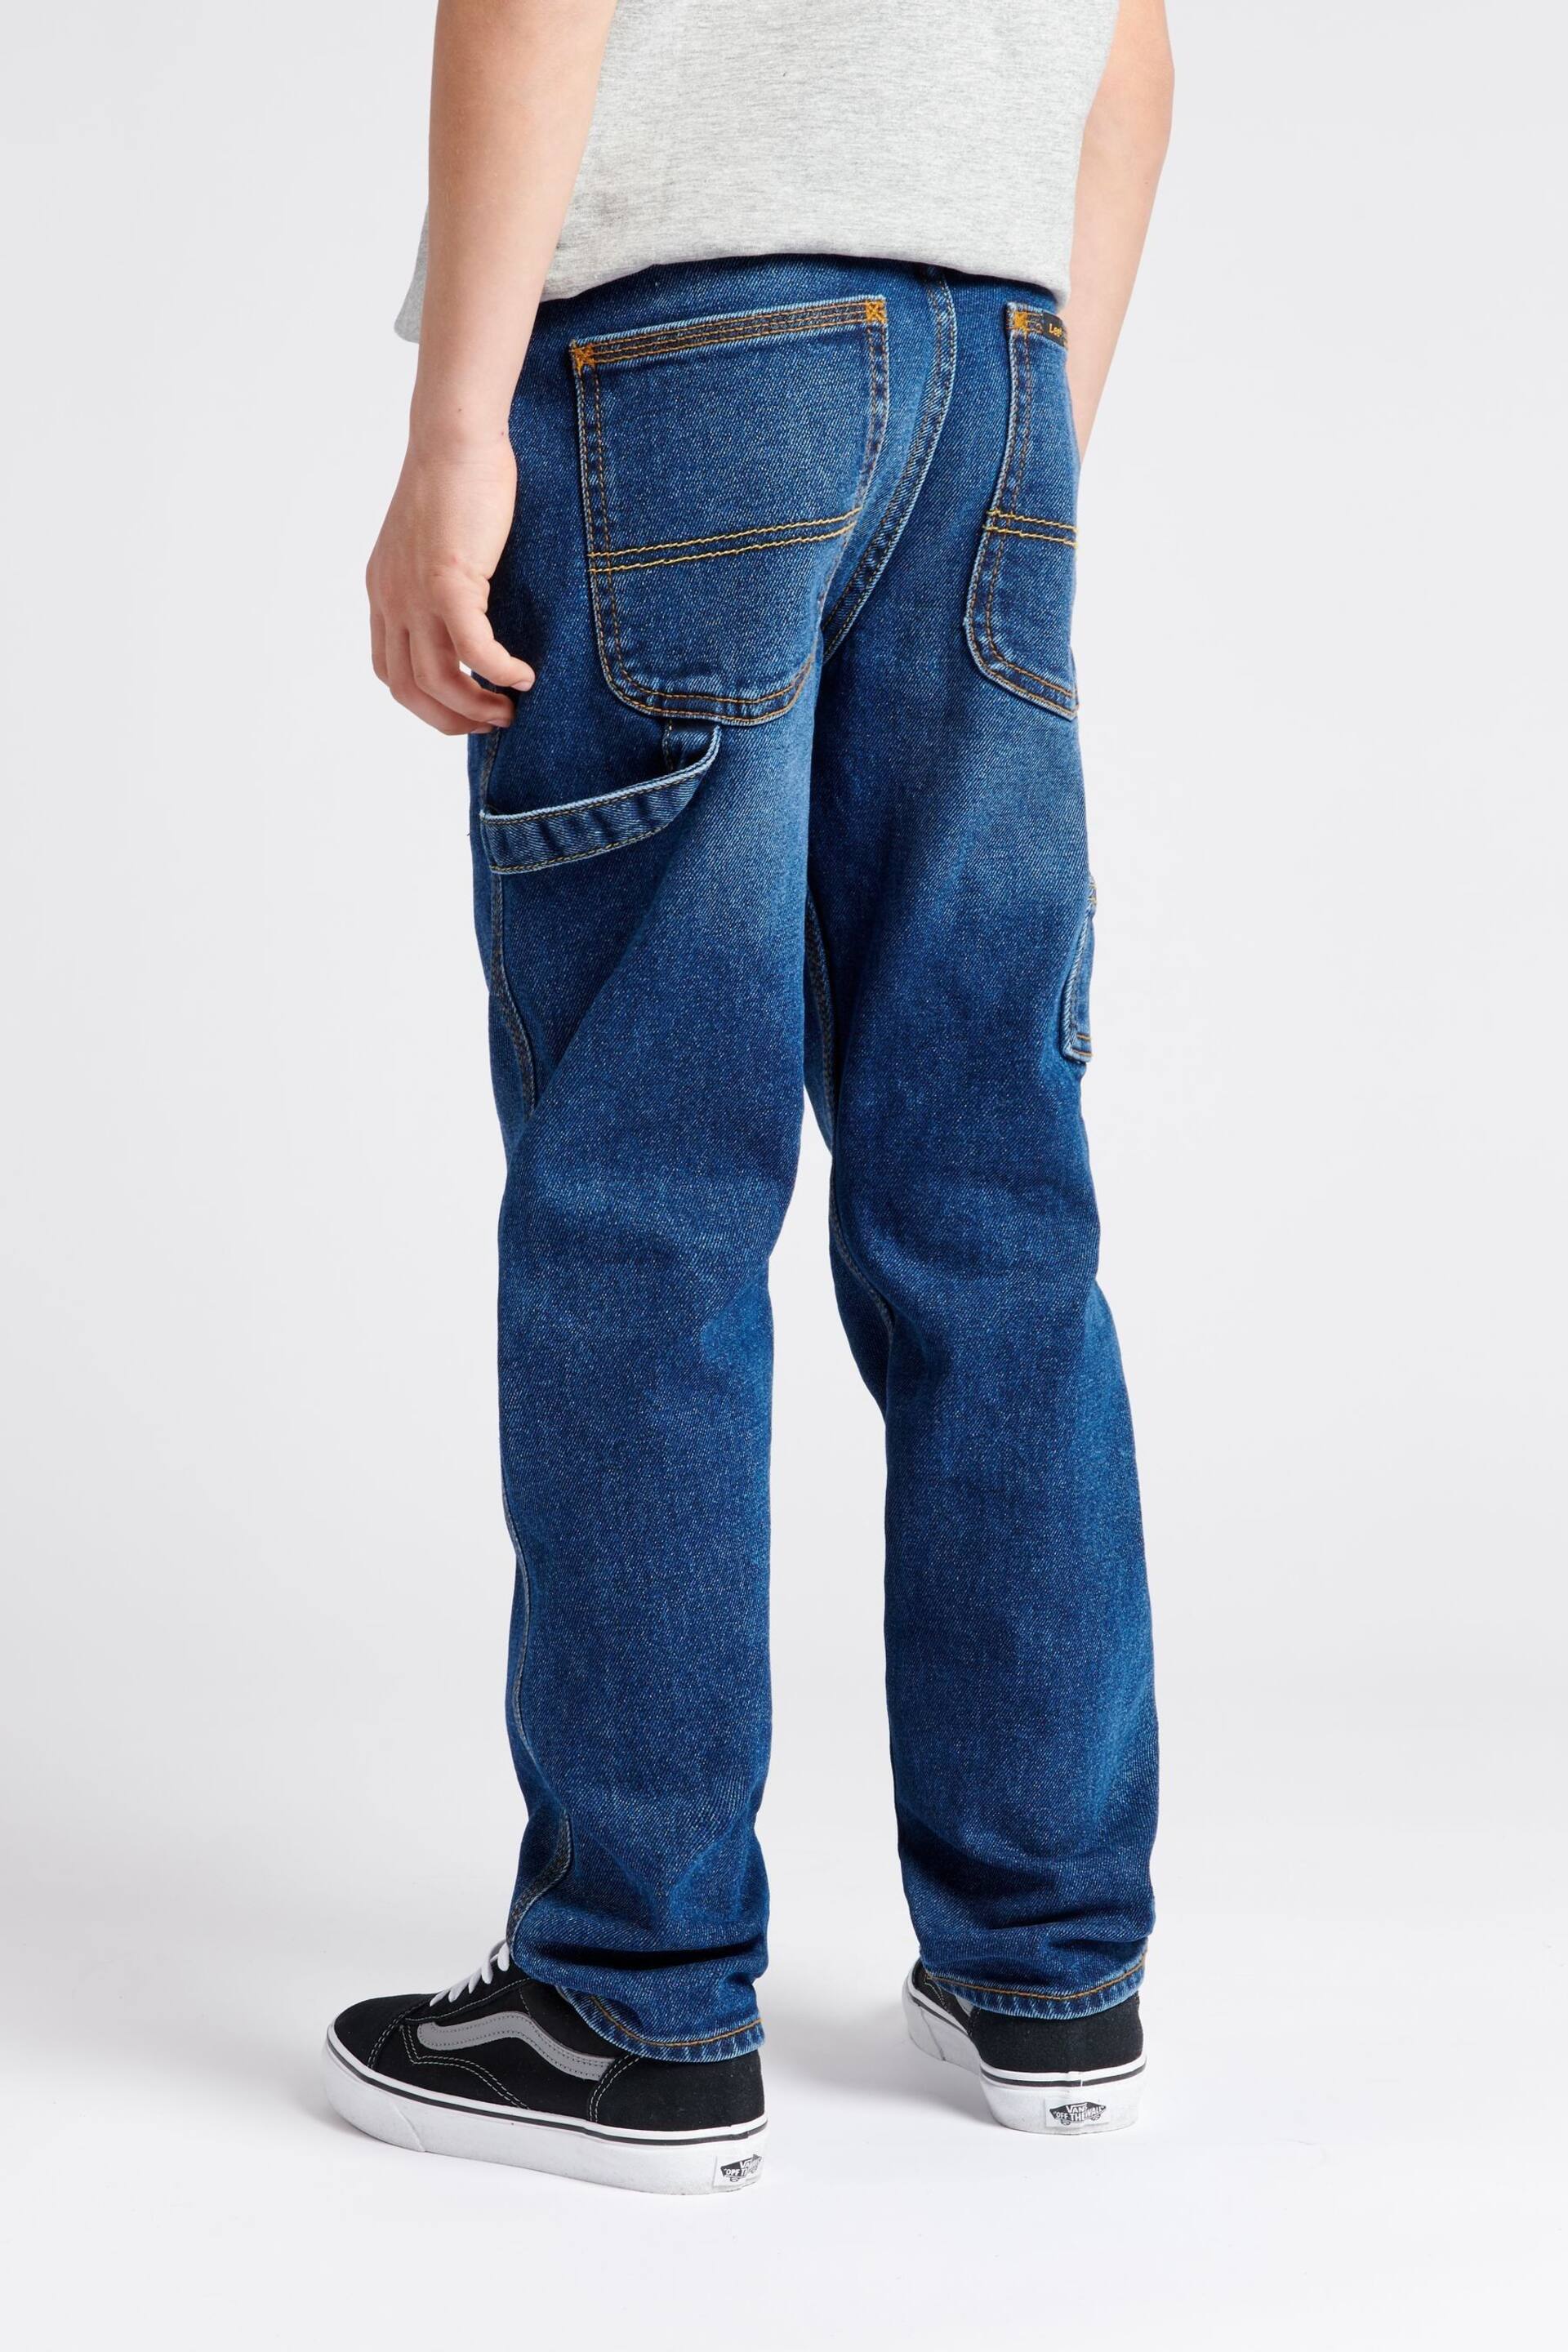 Lee Boys Blue Carpenter Denim Jeans - Image 2 of 6